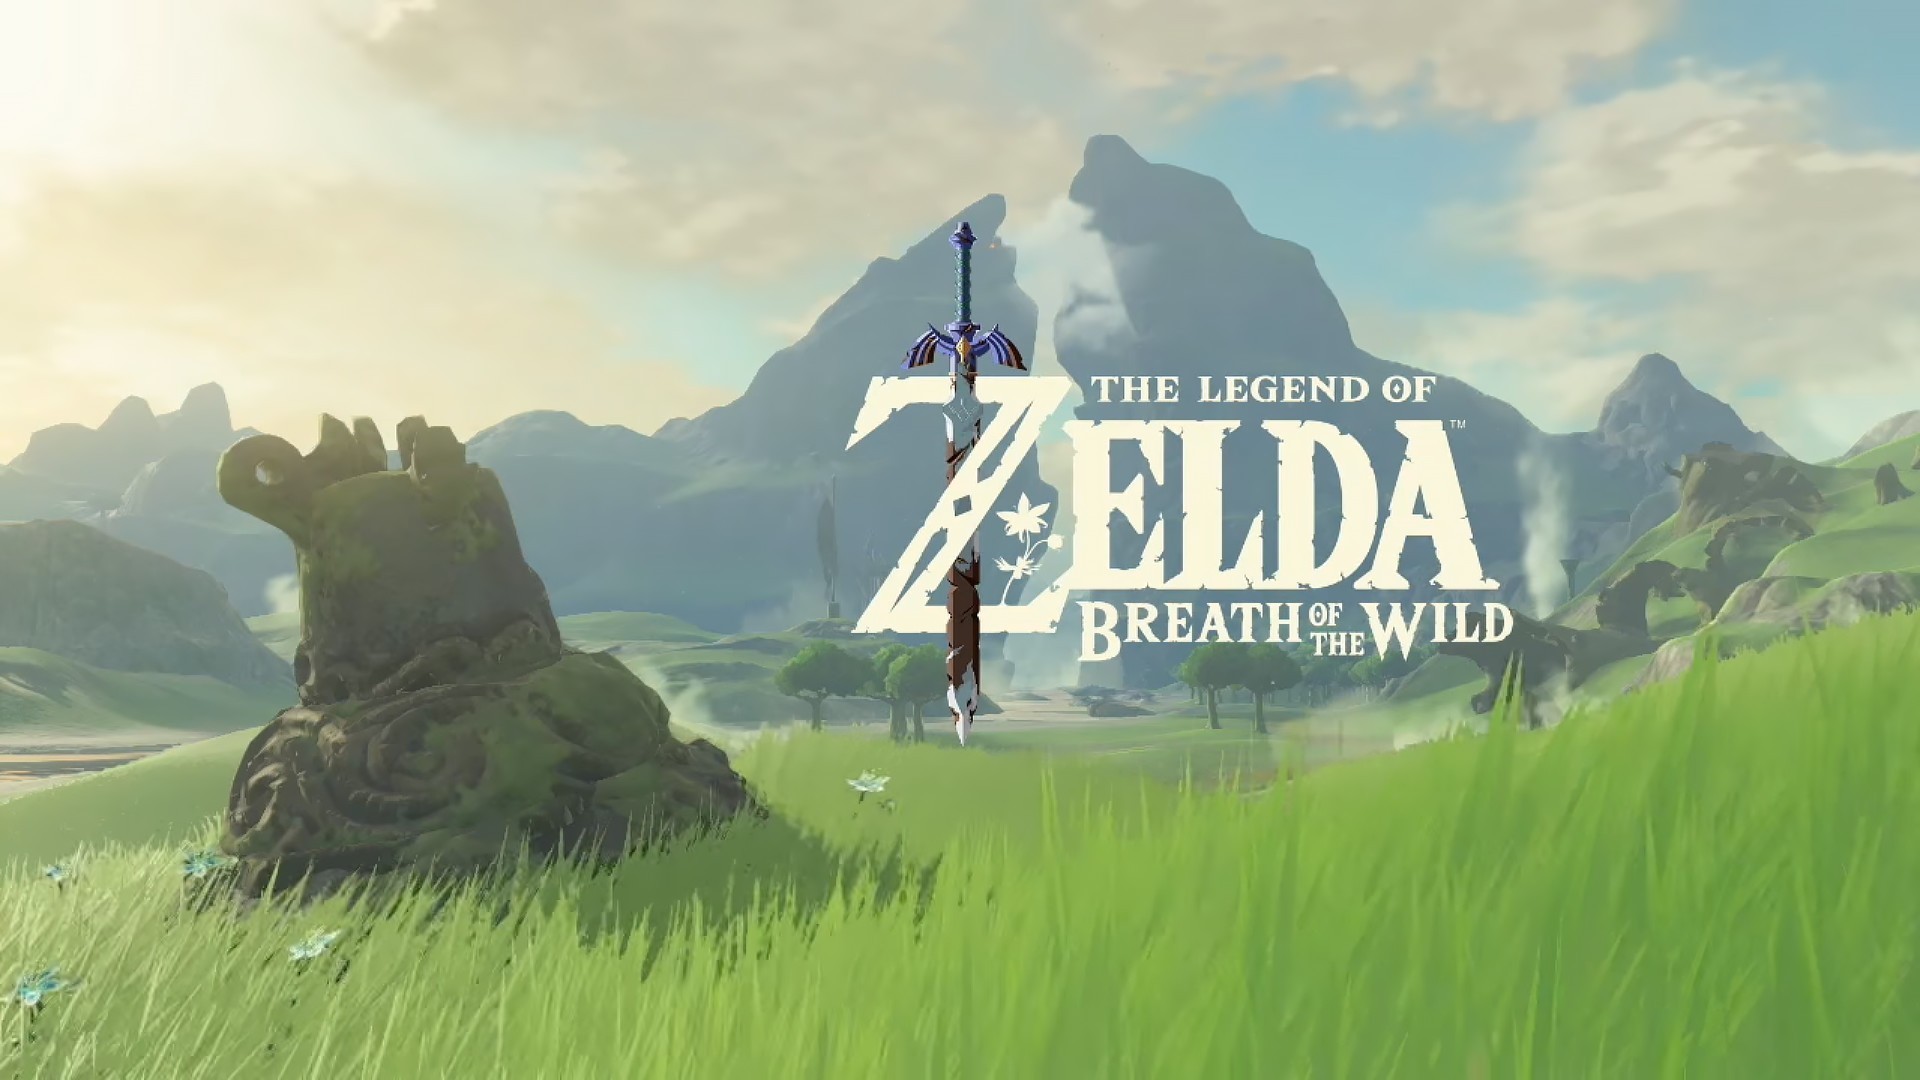 1920x1080 Computerspiele - The Legend of Zelda: Breath of the Wild The Legend of Zelda  Wallpaper